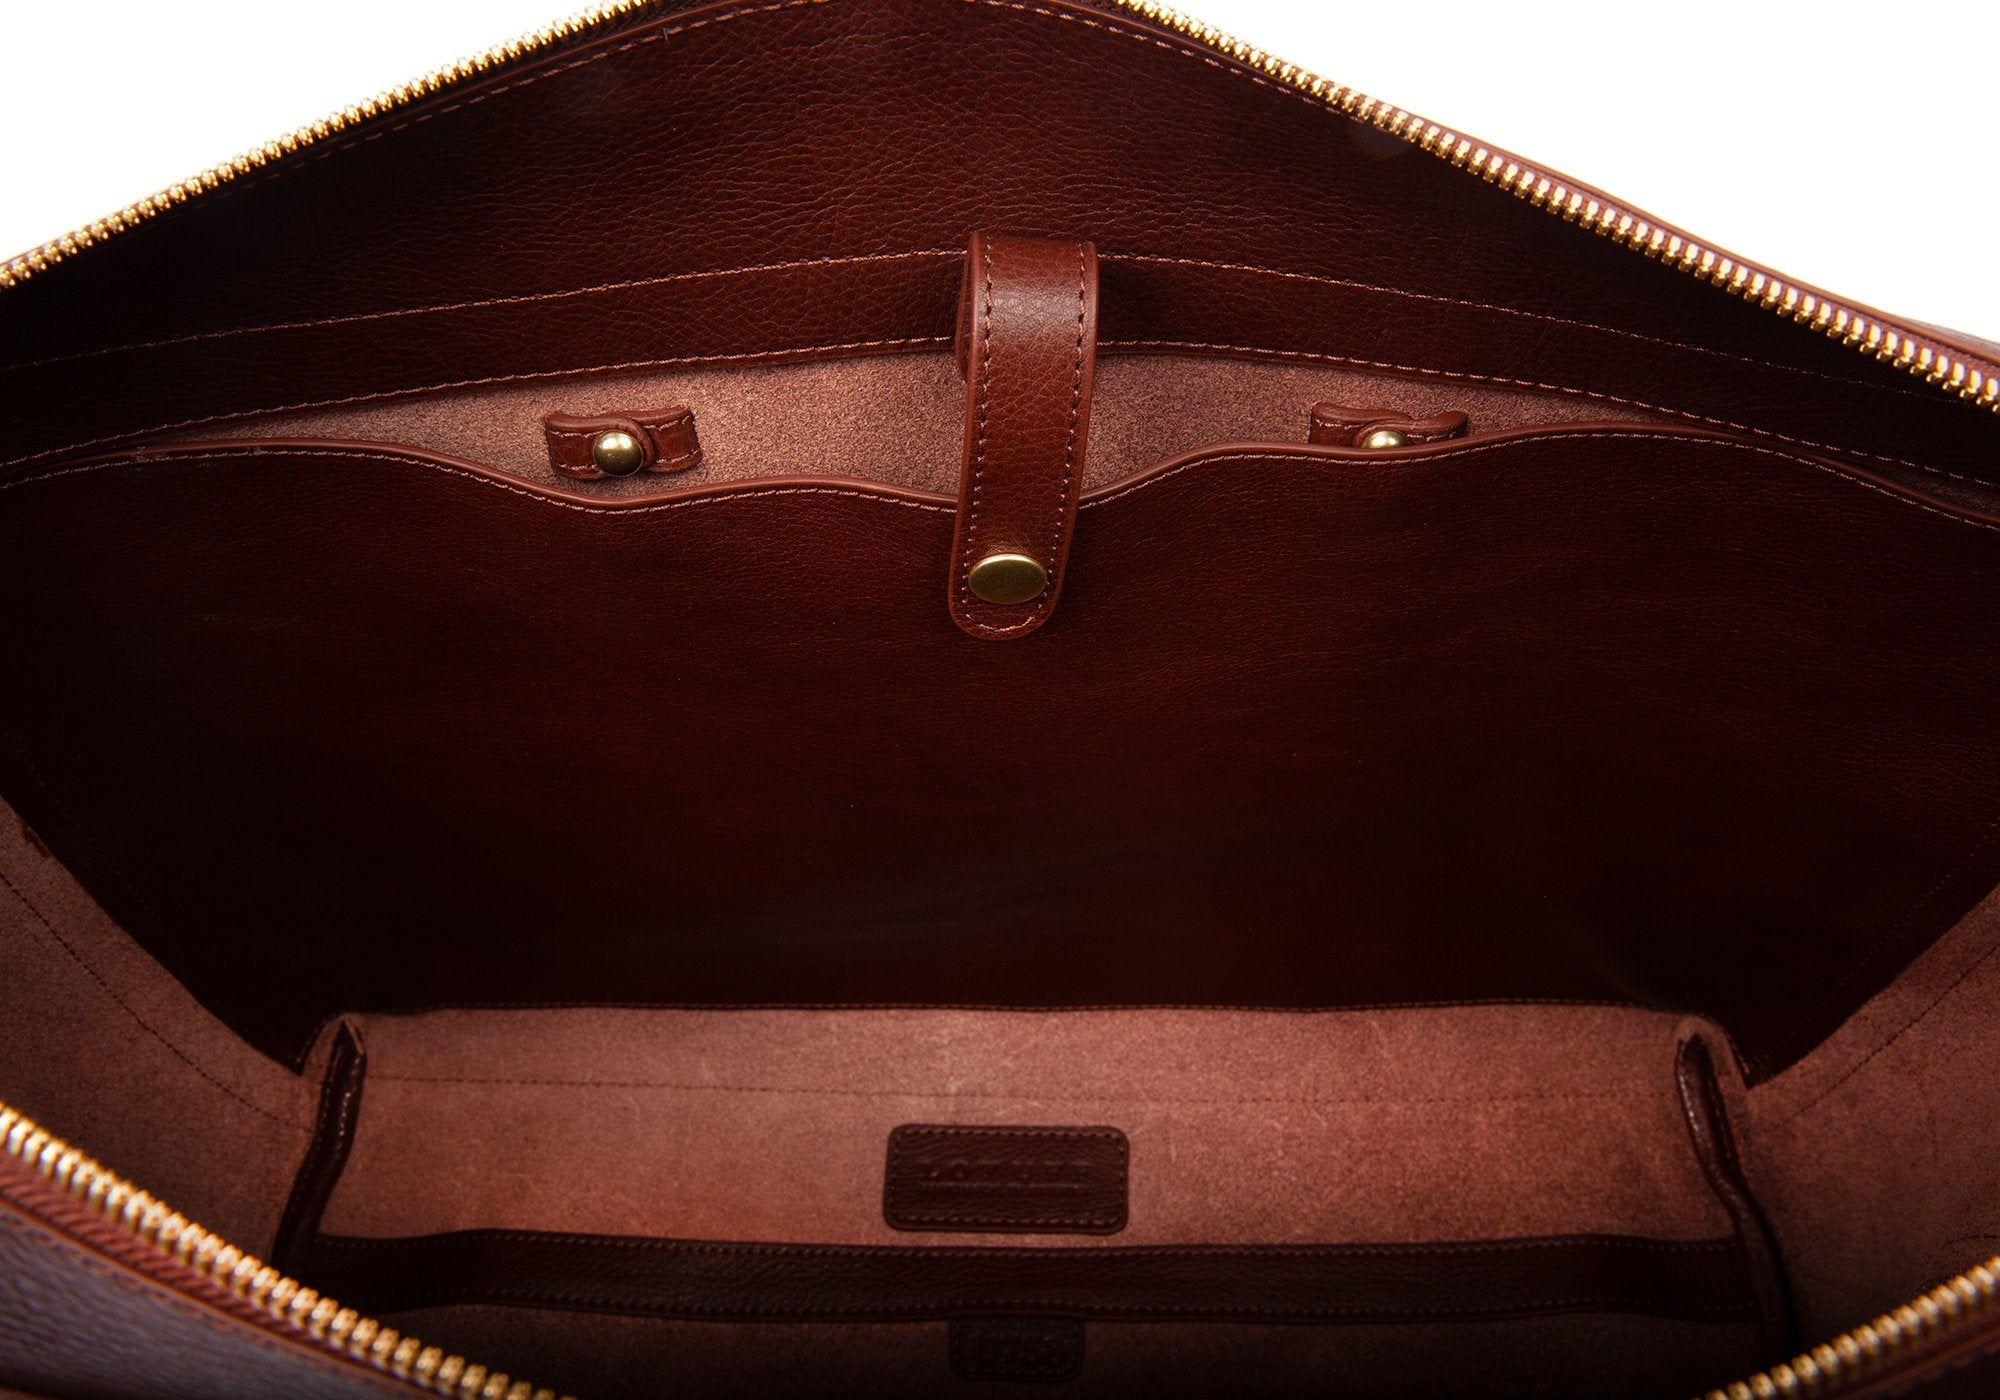 The 929 Briefcase Chestnut